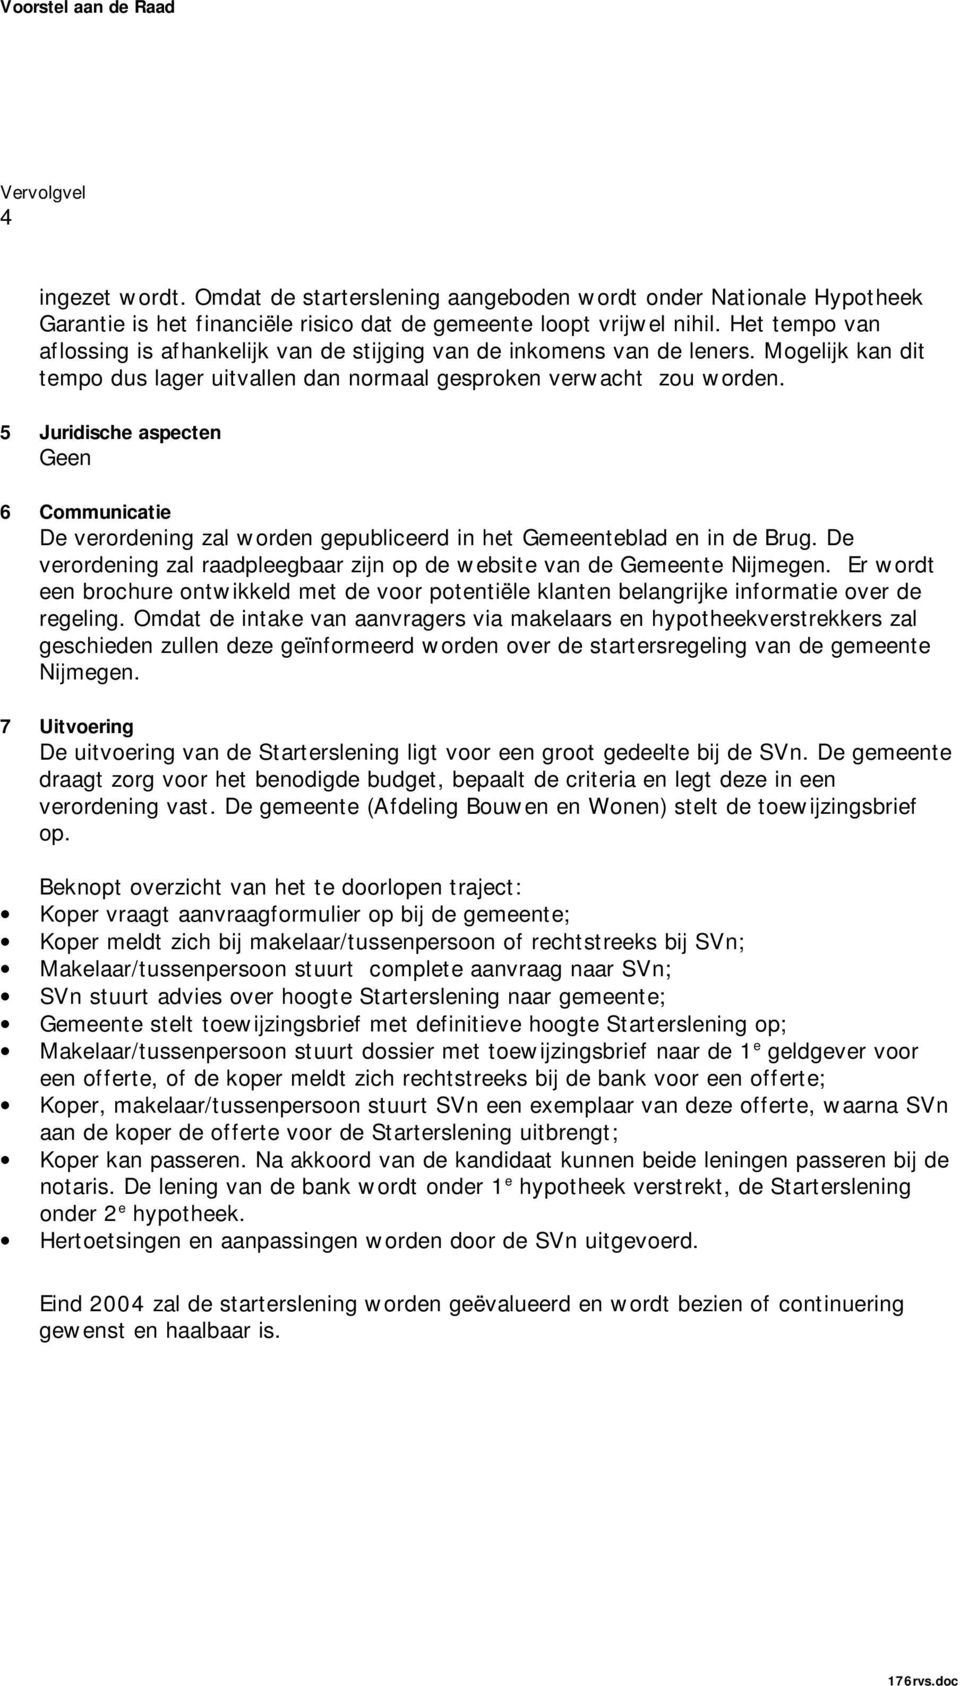 5 Juridische aspecten Geen 6 Communicatie De verordening zal worden gepubliceerd in het Gemeenteblad en in de Brug. De verordening zal raadpleegbaar zijn op de website van de Gemeente Nijmegen.